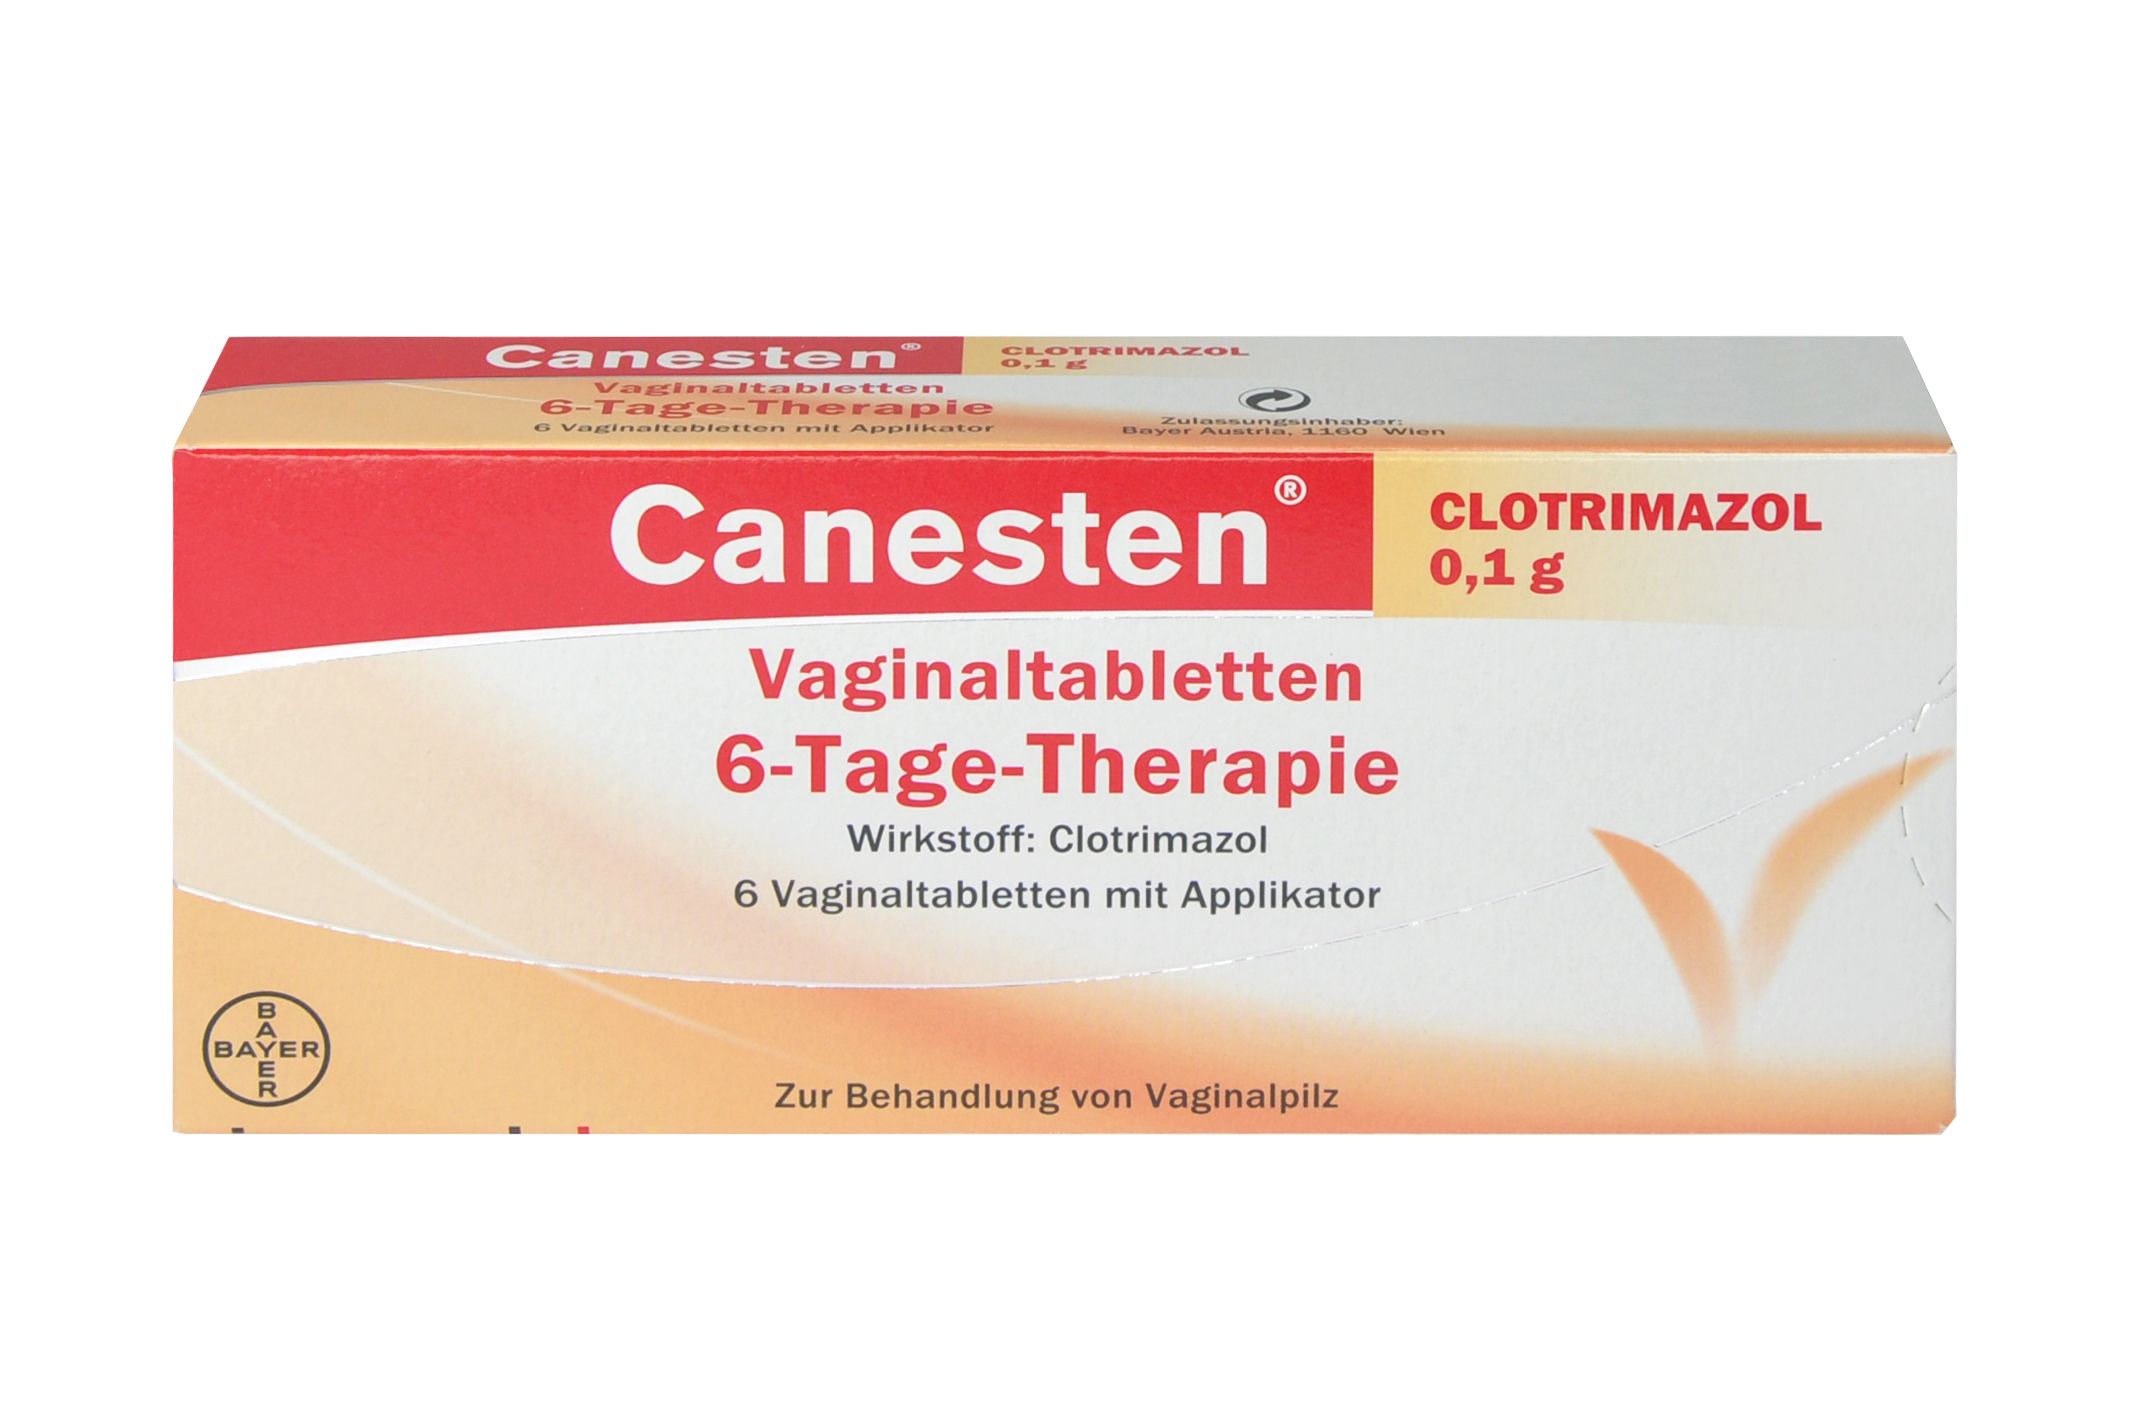 Abbildung Canesten Clotrimazol 0,1 g - Vaginaltabletten